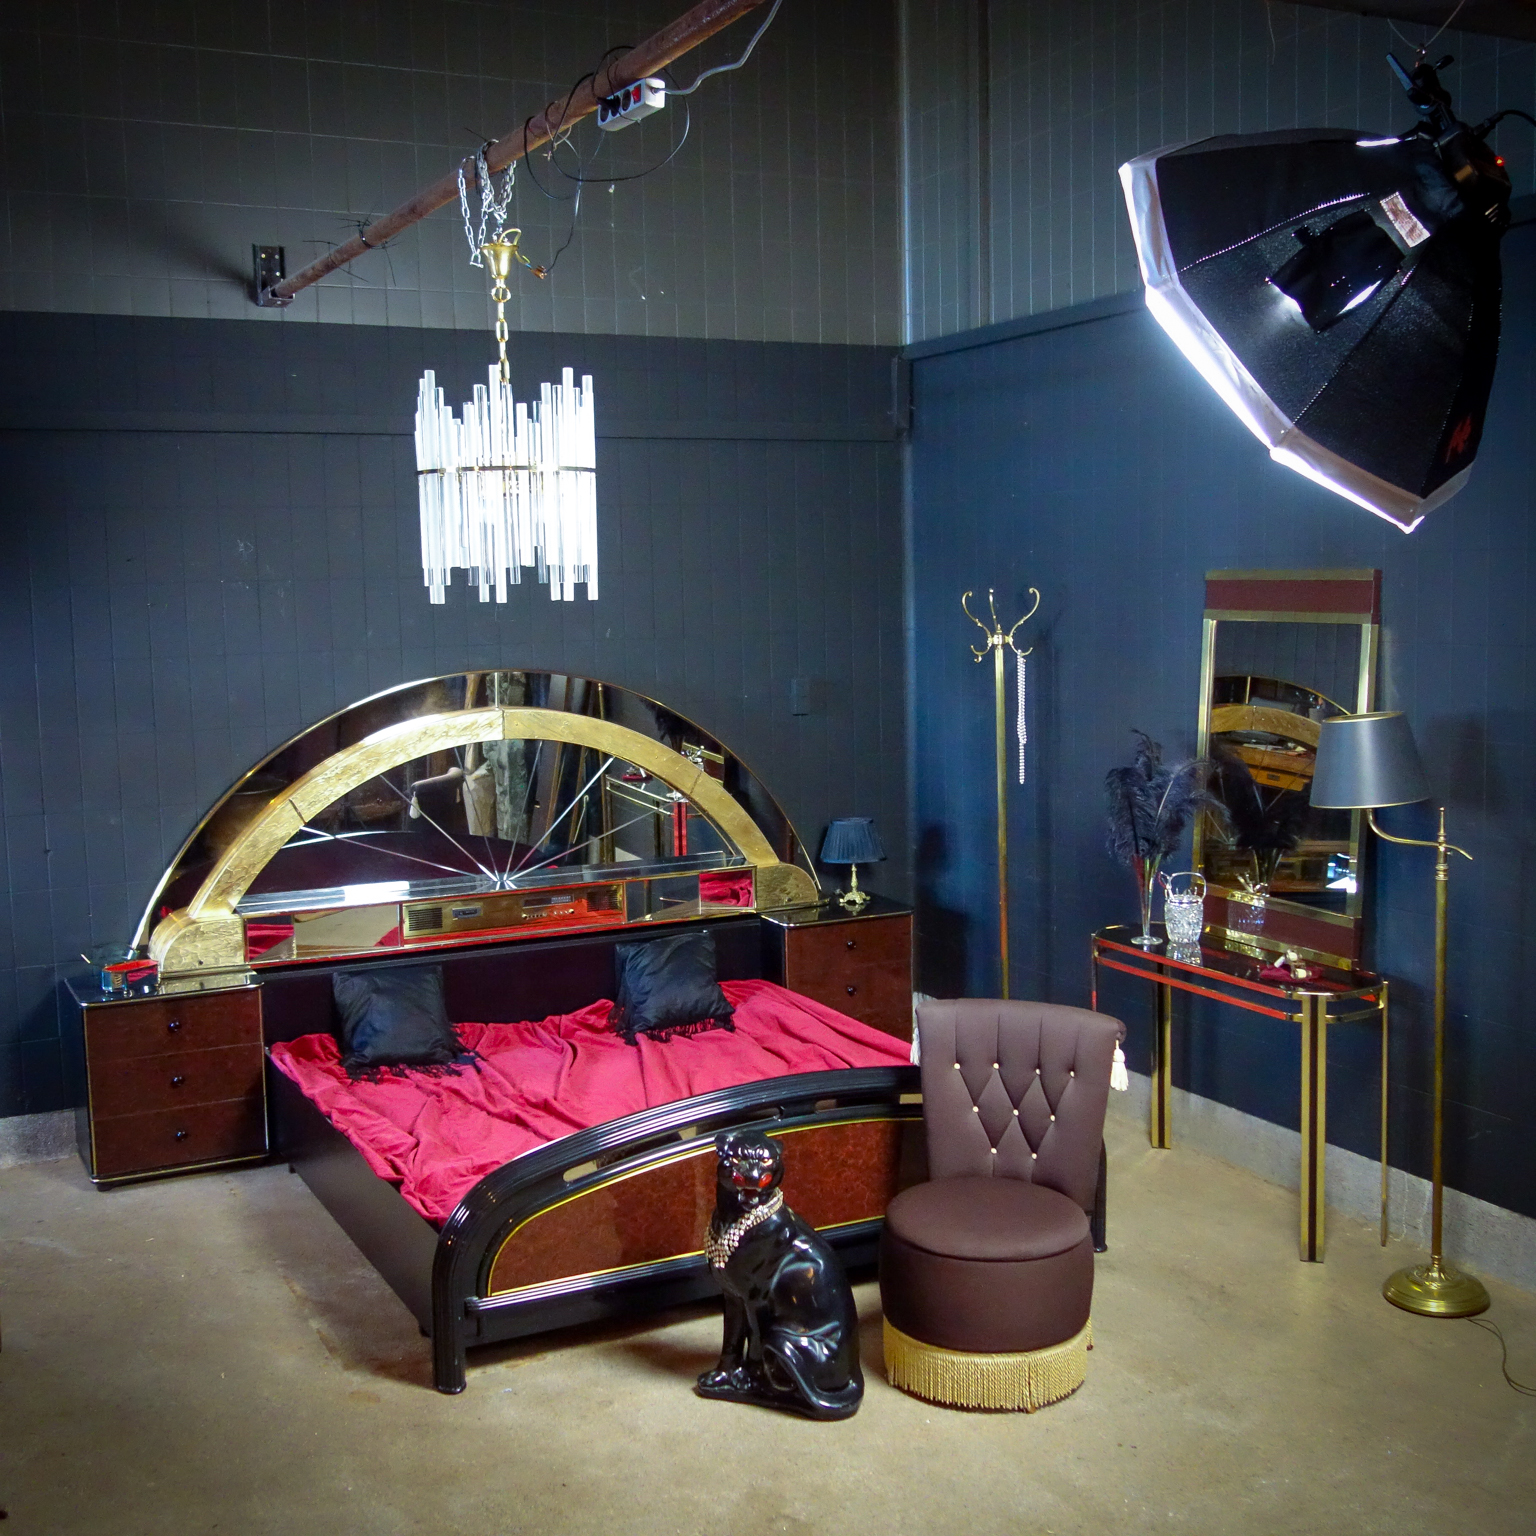 Bijwerken biologisch Speel Vintage Bed met Enorme Spiegel - Goud Zwart - Jaren 70 - Assortiment -  Vivre Interieur Authentique